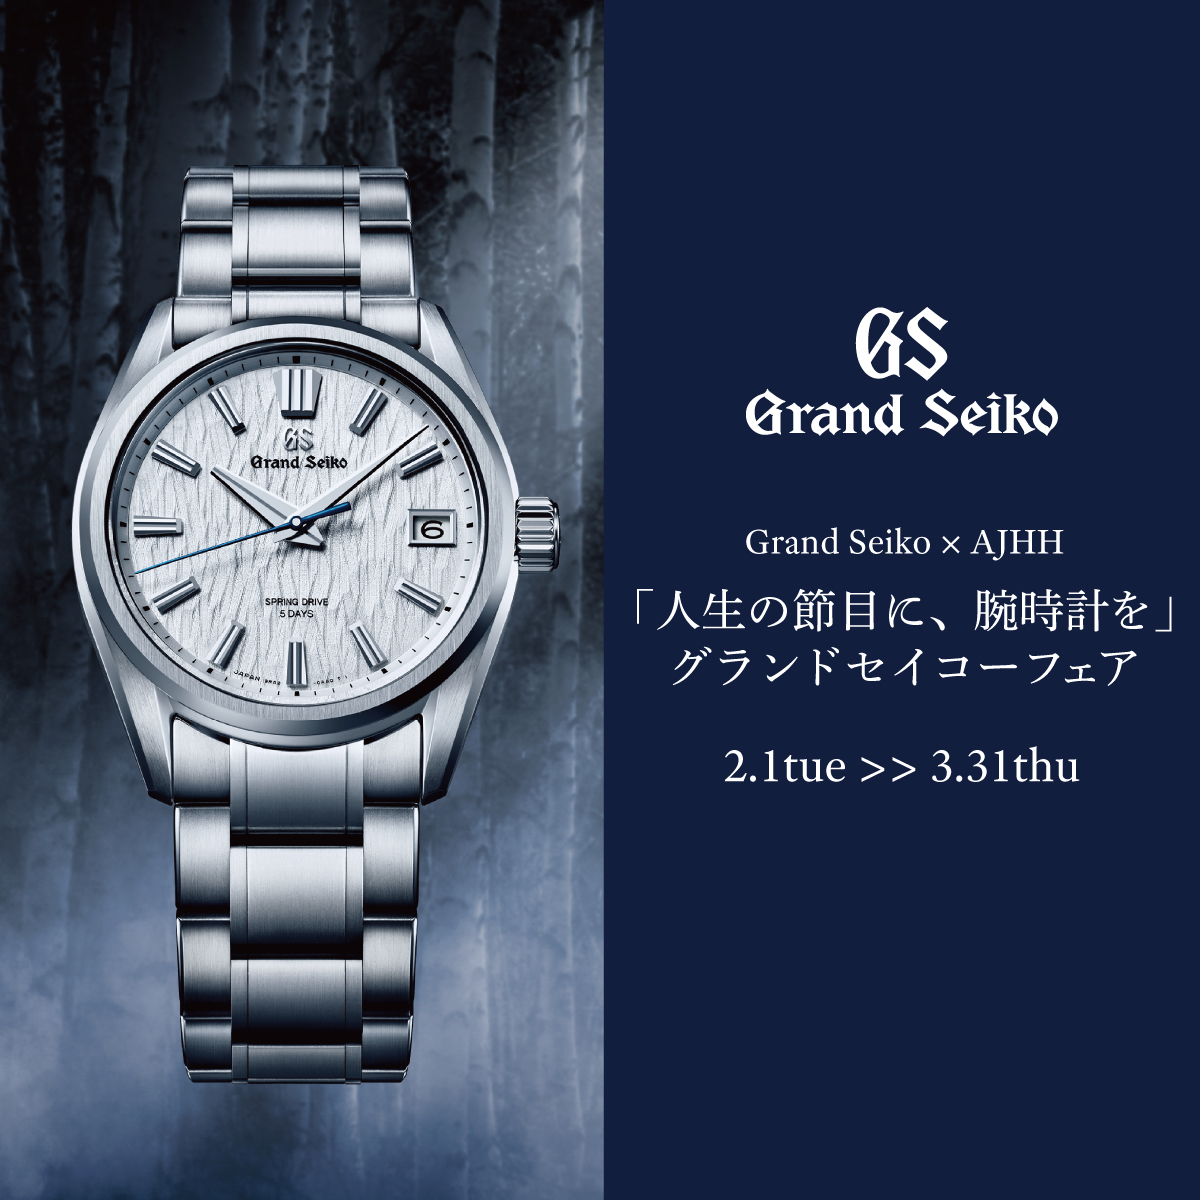 Grand Seiko×AJHH 「人生の節目に、腕時計を」 グランドセイコーフェア